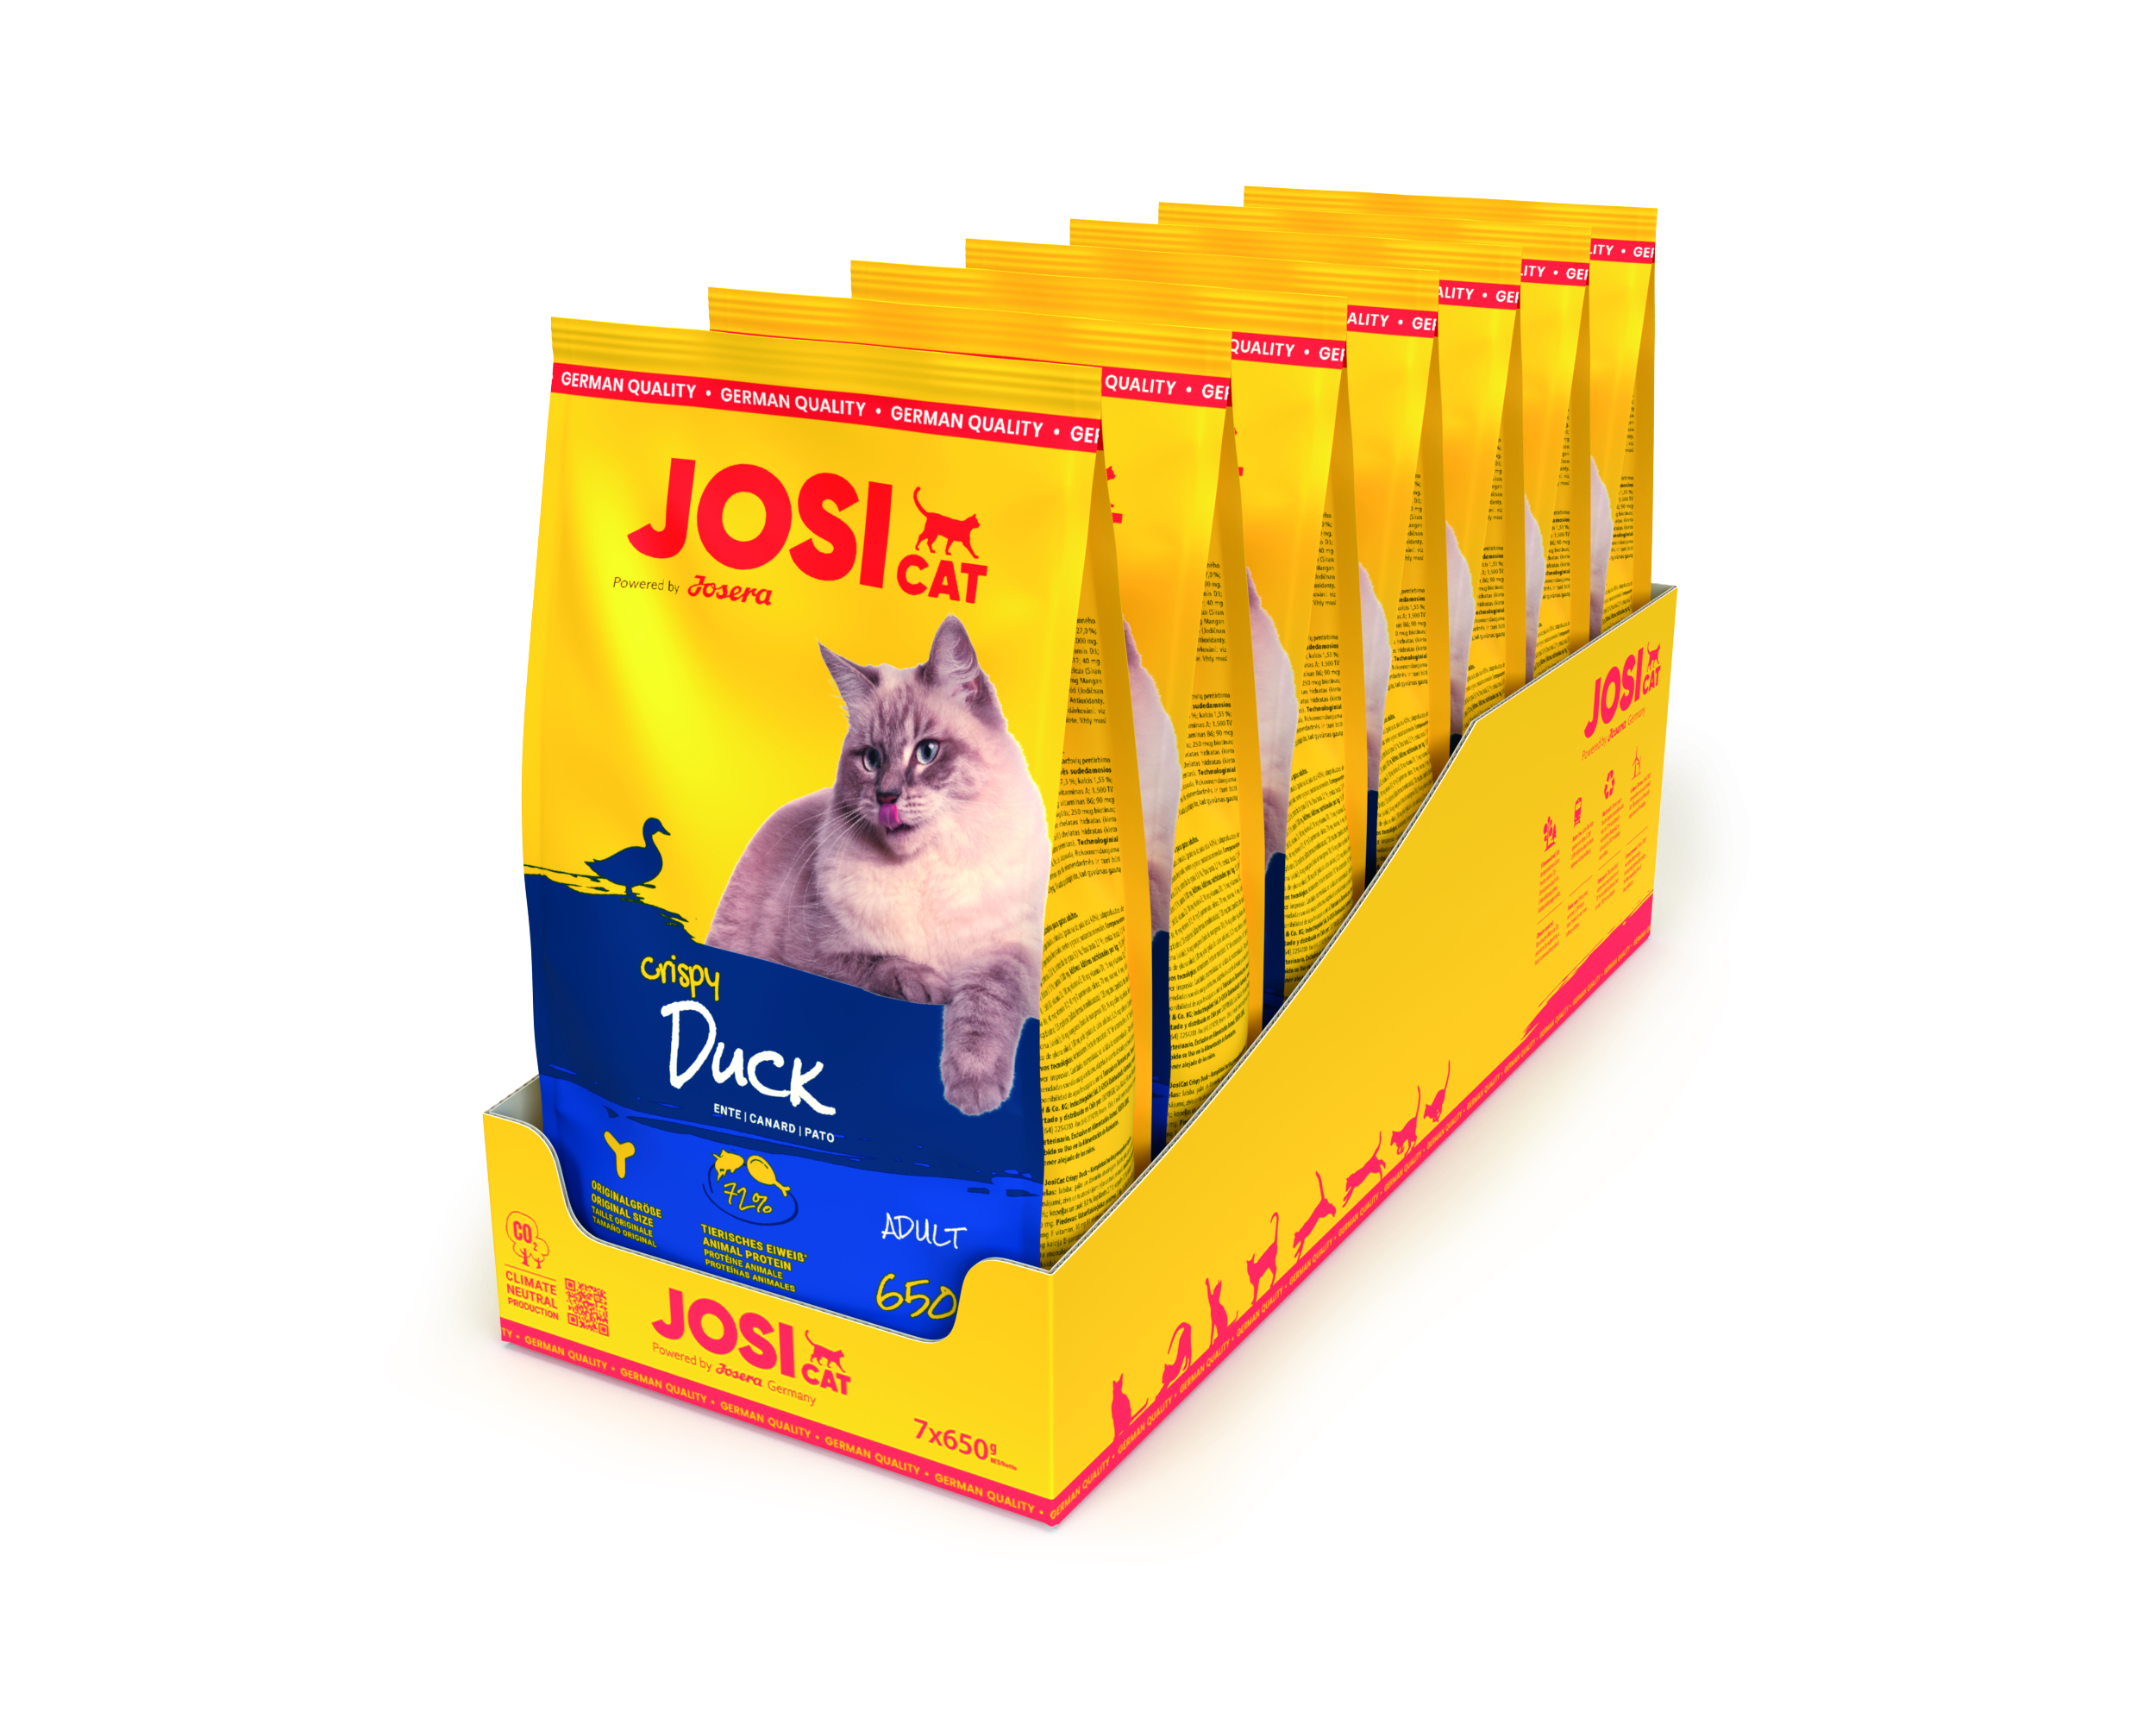 Josera JosiCat Crispy Duck - Der Gaumenschmaus mit köstlicher Ente 7x650g